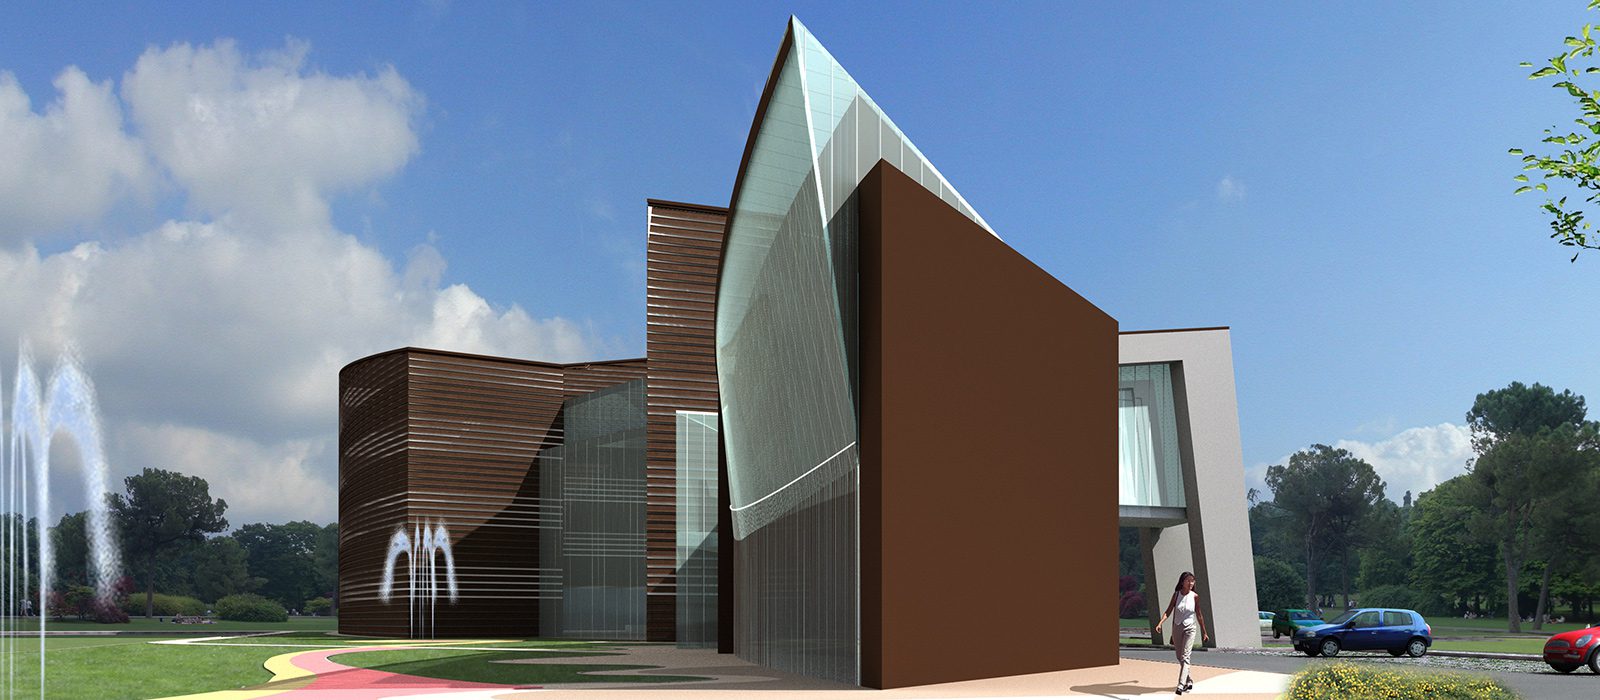 10_rendering_progetto_residenziale_-commerciale_giuseppe_passaro_architetto_reggio_emilia